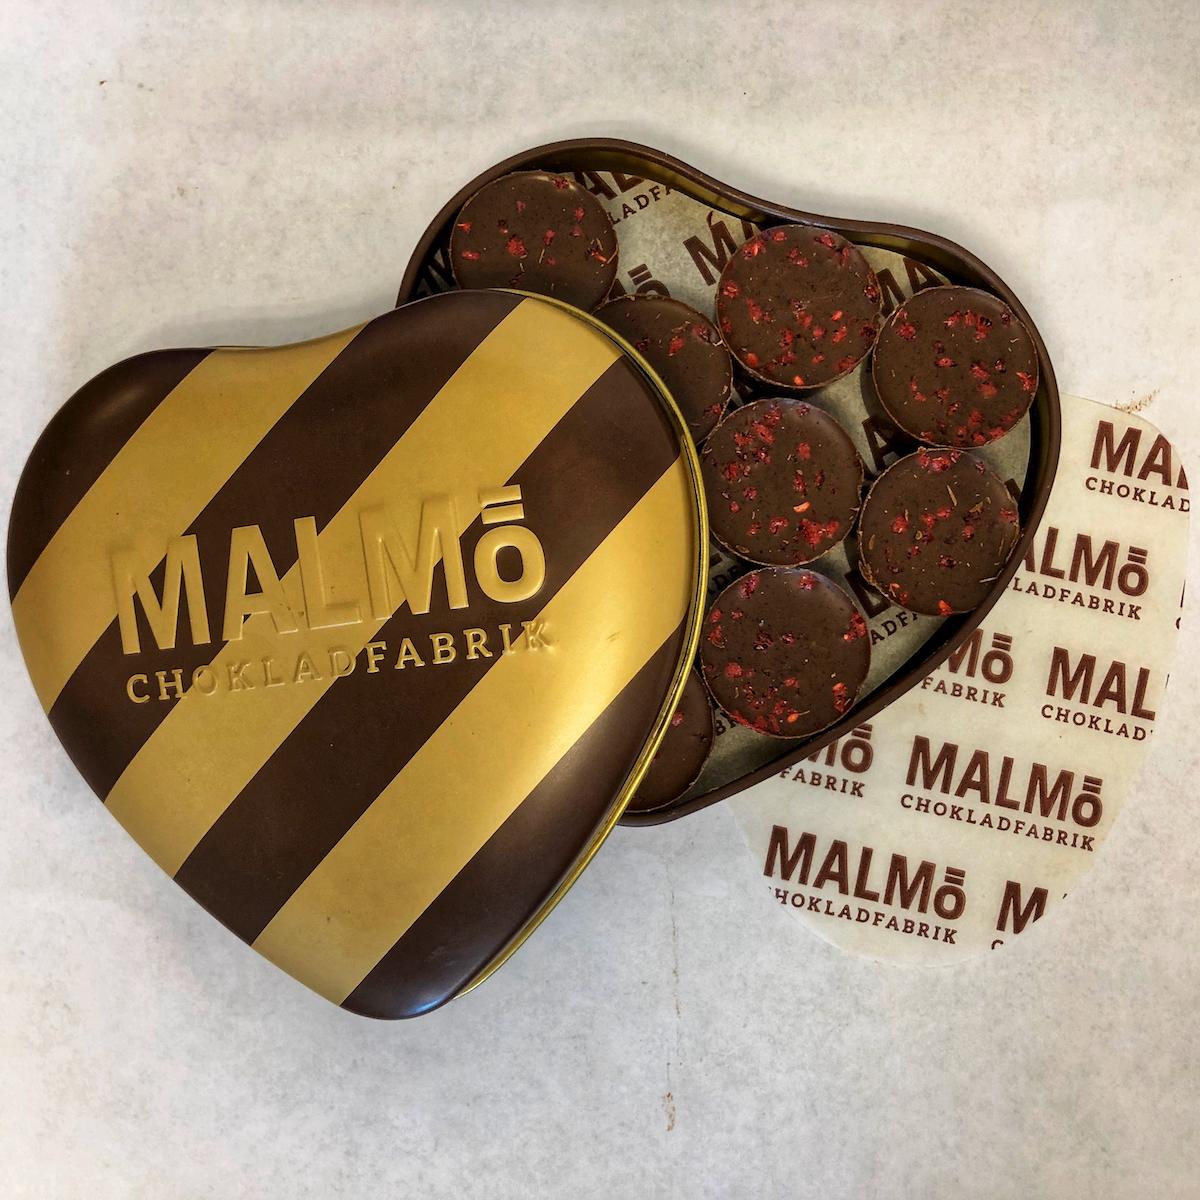 Malmö Chokladfabrik's Kärlek'